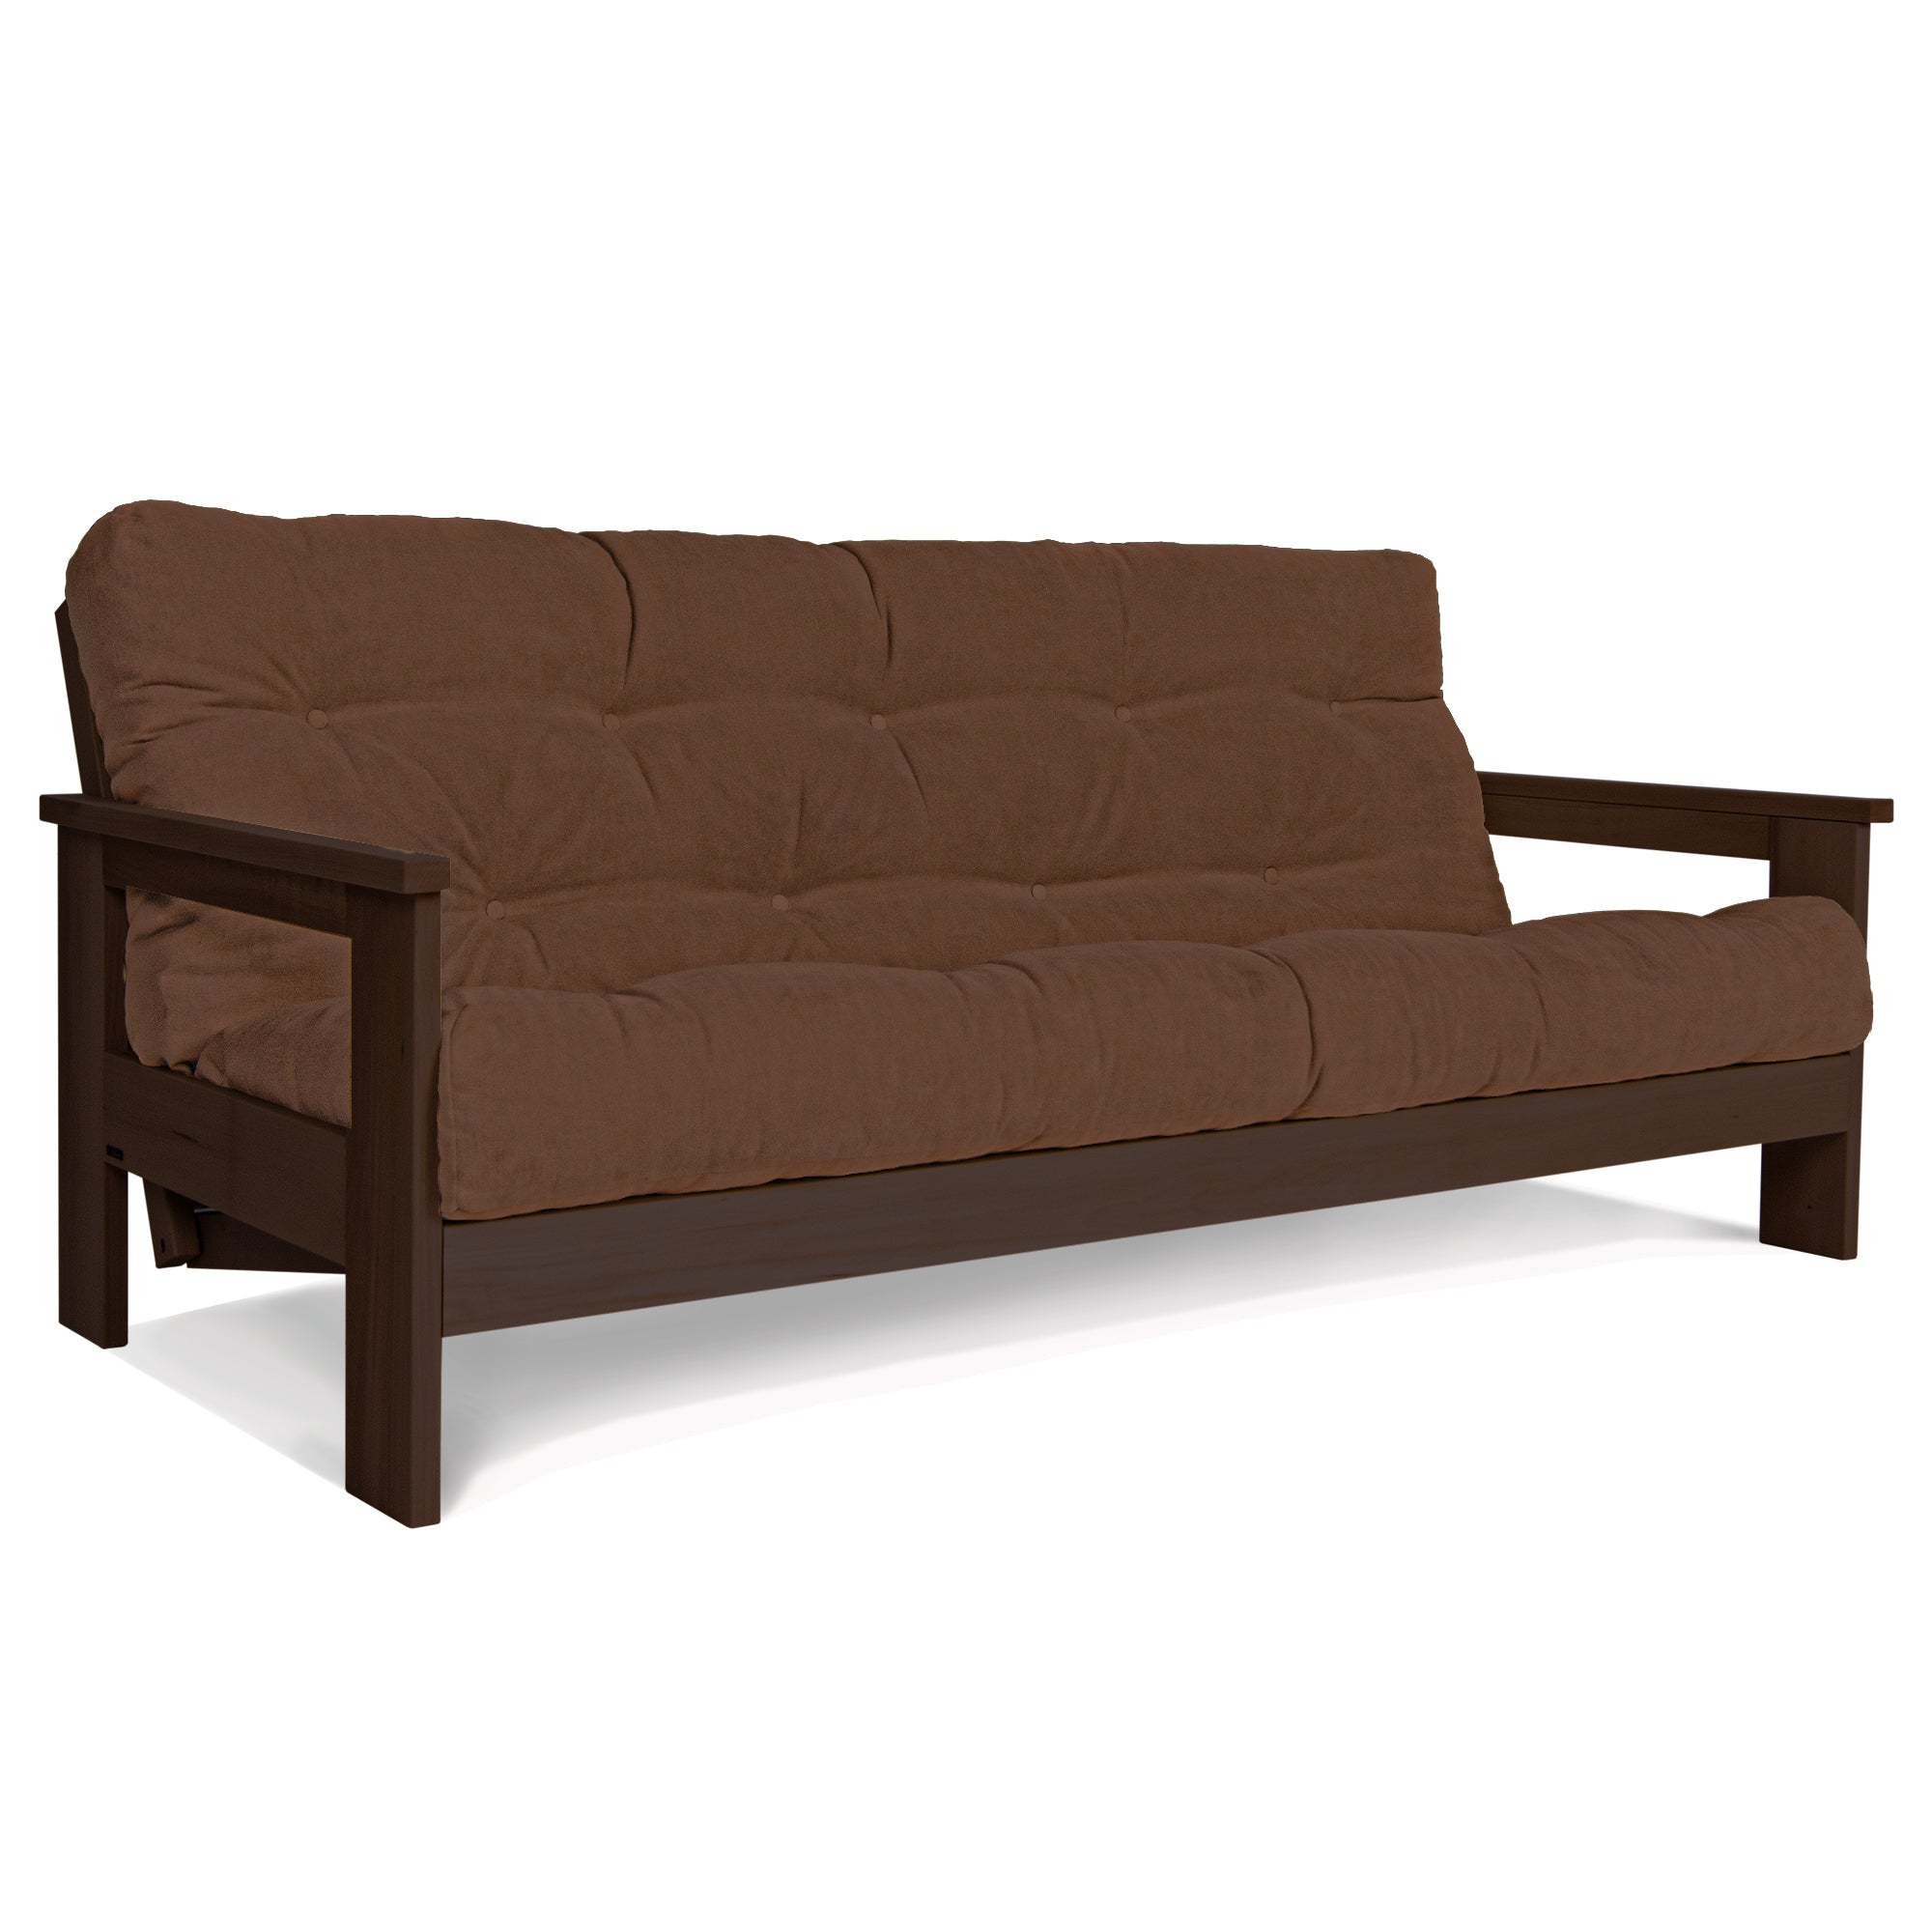 Розкладний диван-футон MEXICO, каркас шоколадного кольору